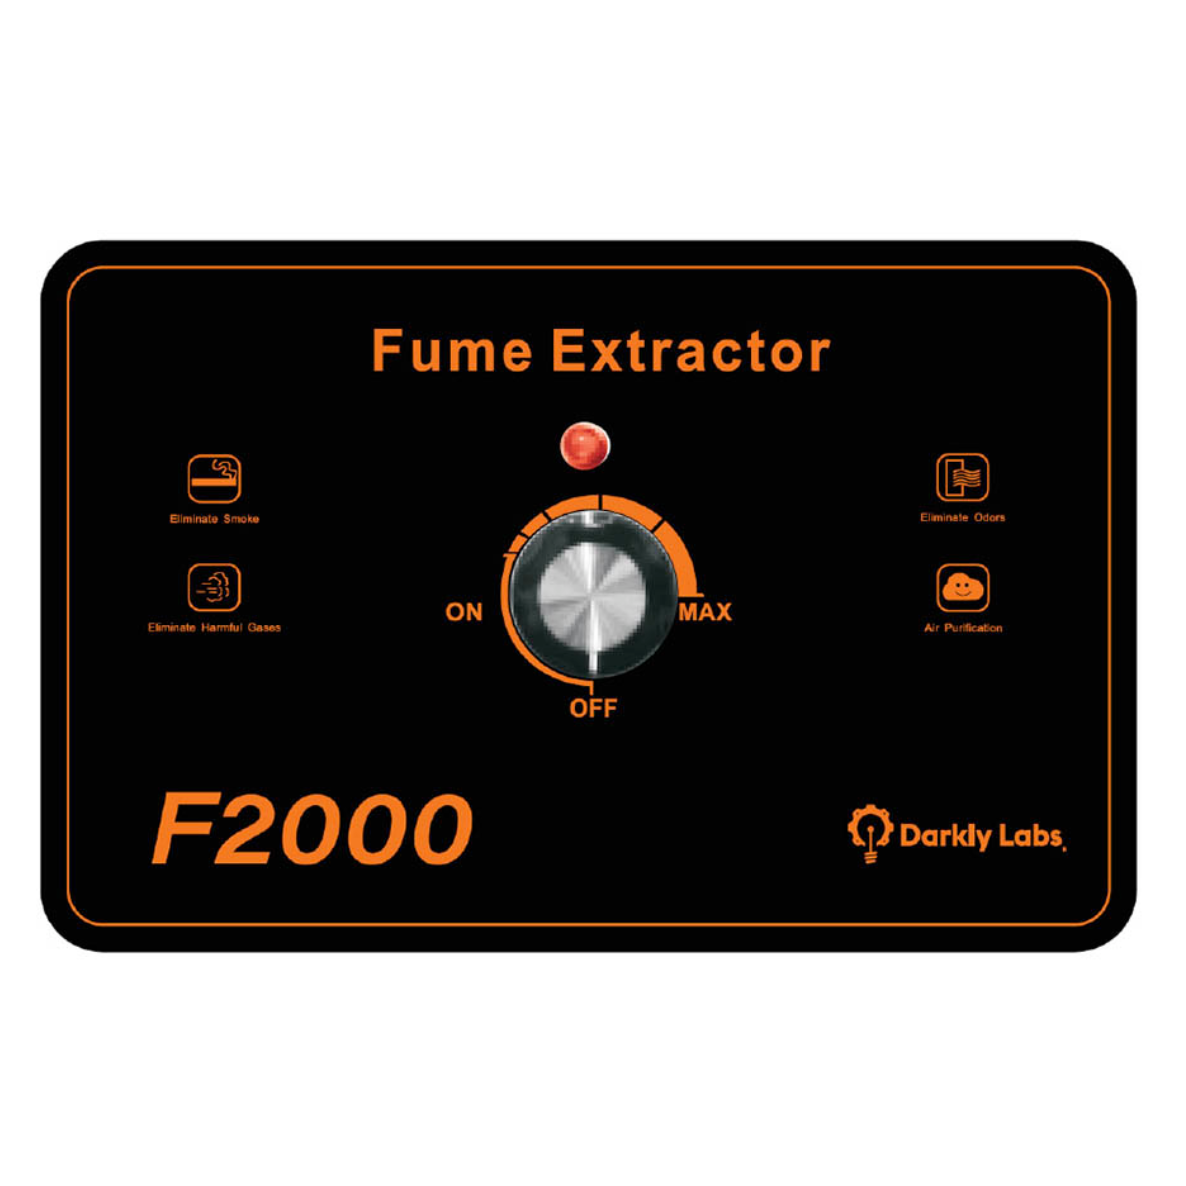 External Fume Filtration system